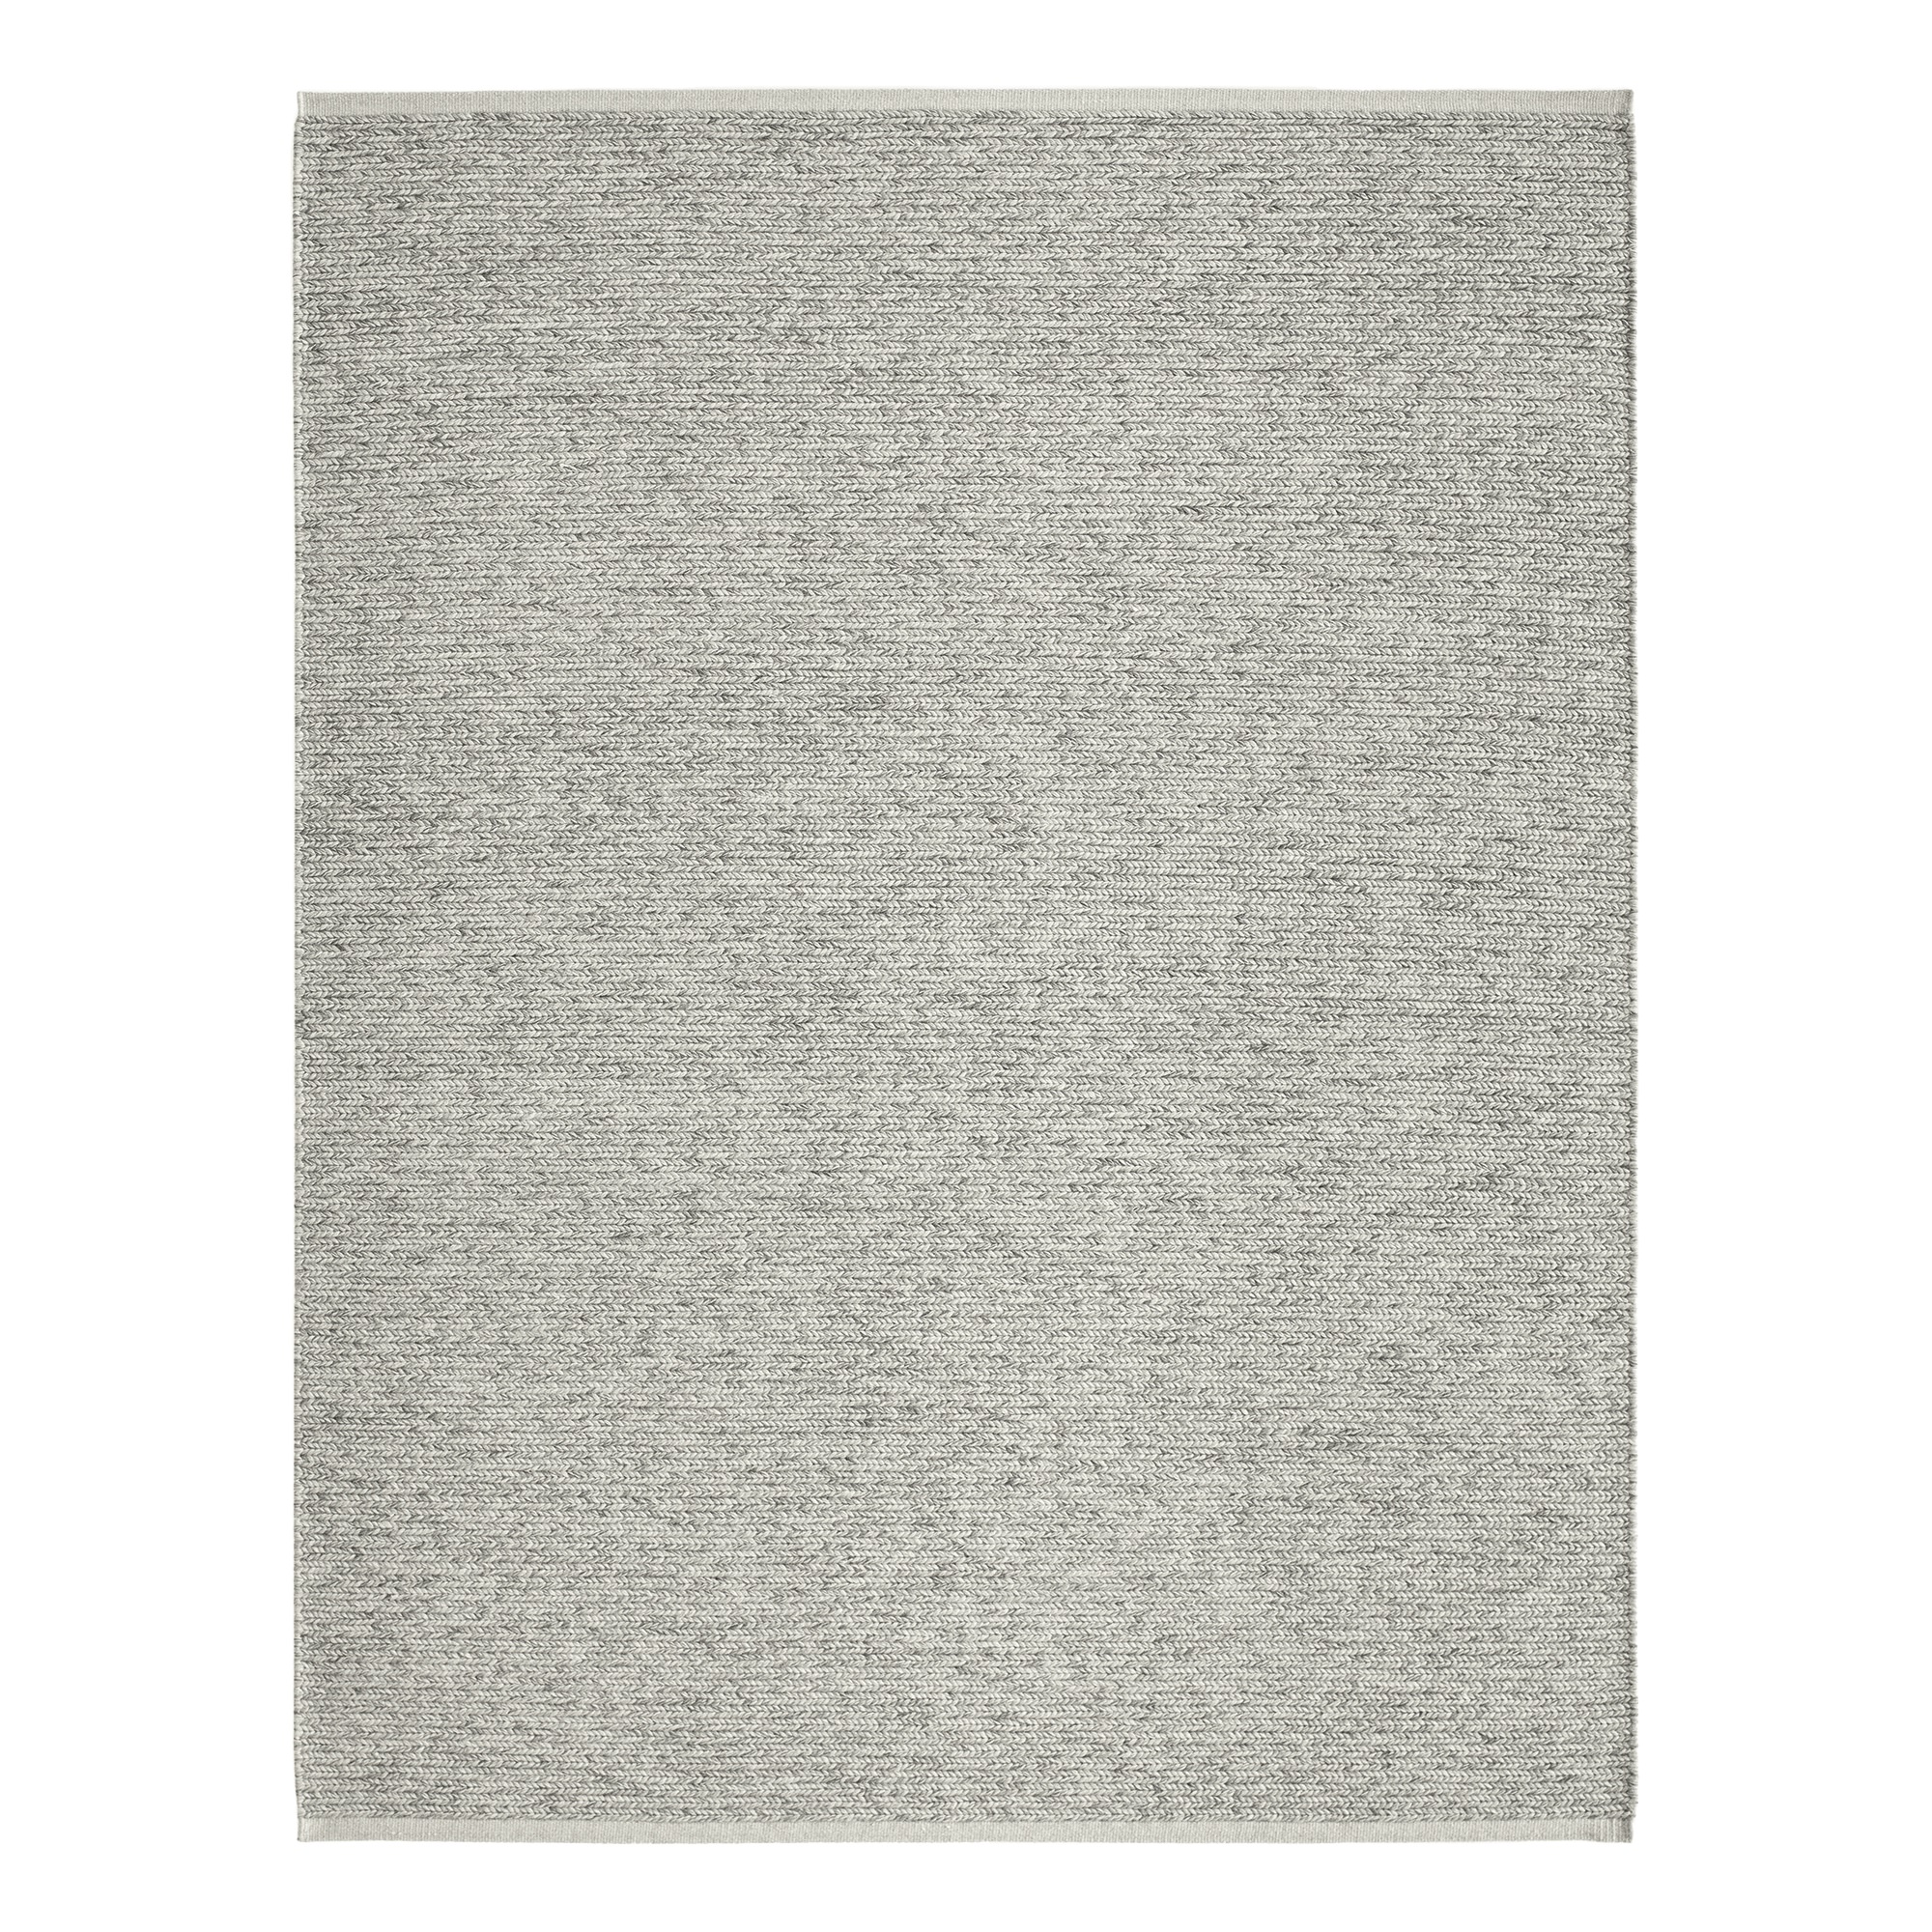 Teppich Aram 2 in der Farbe 0131 von Kvadrat